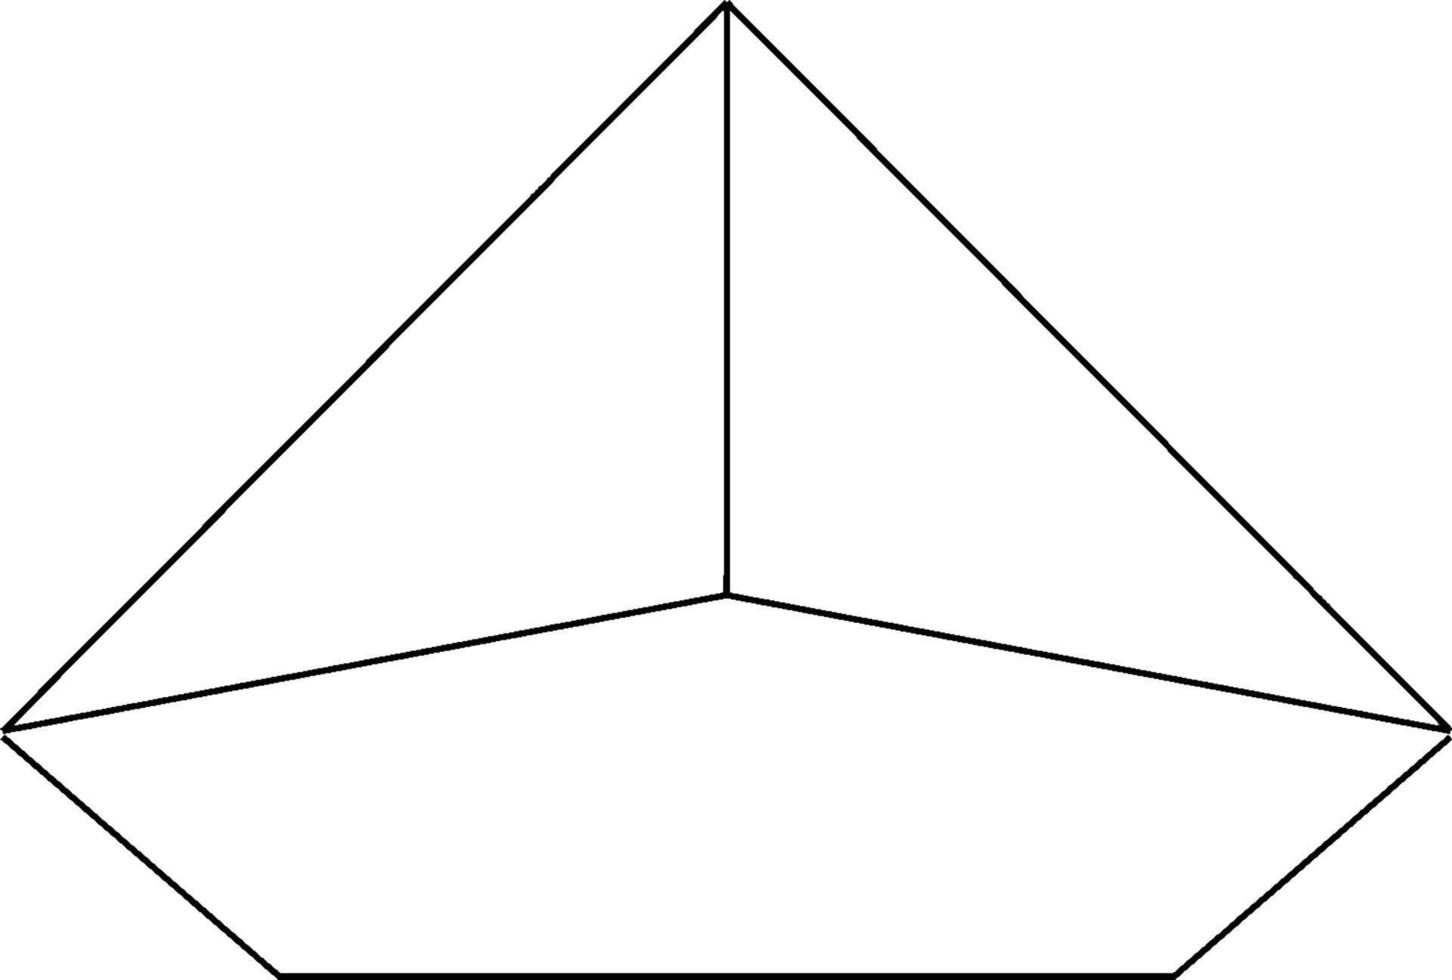 pirâmide pentagonal, ilustração vintage vetor